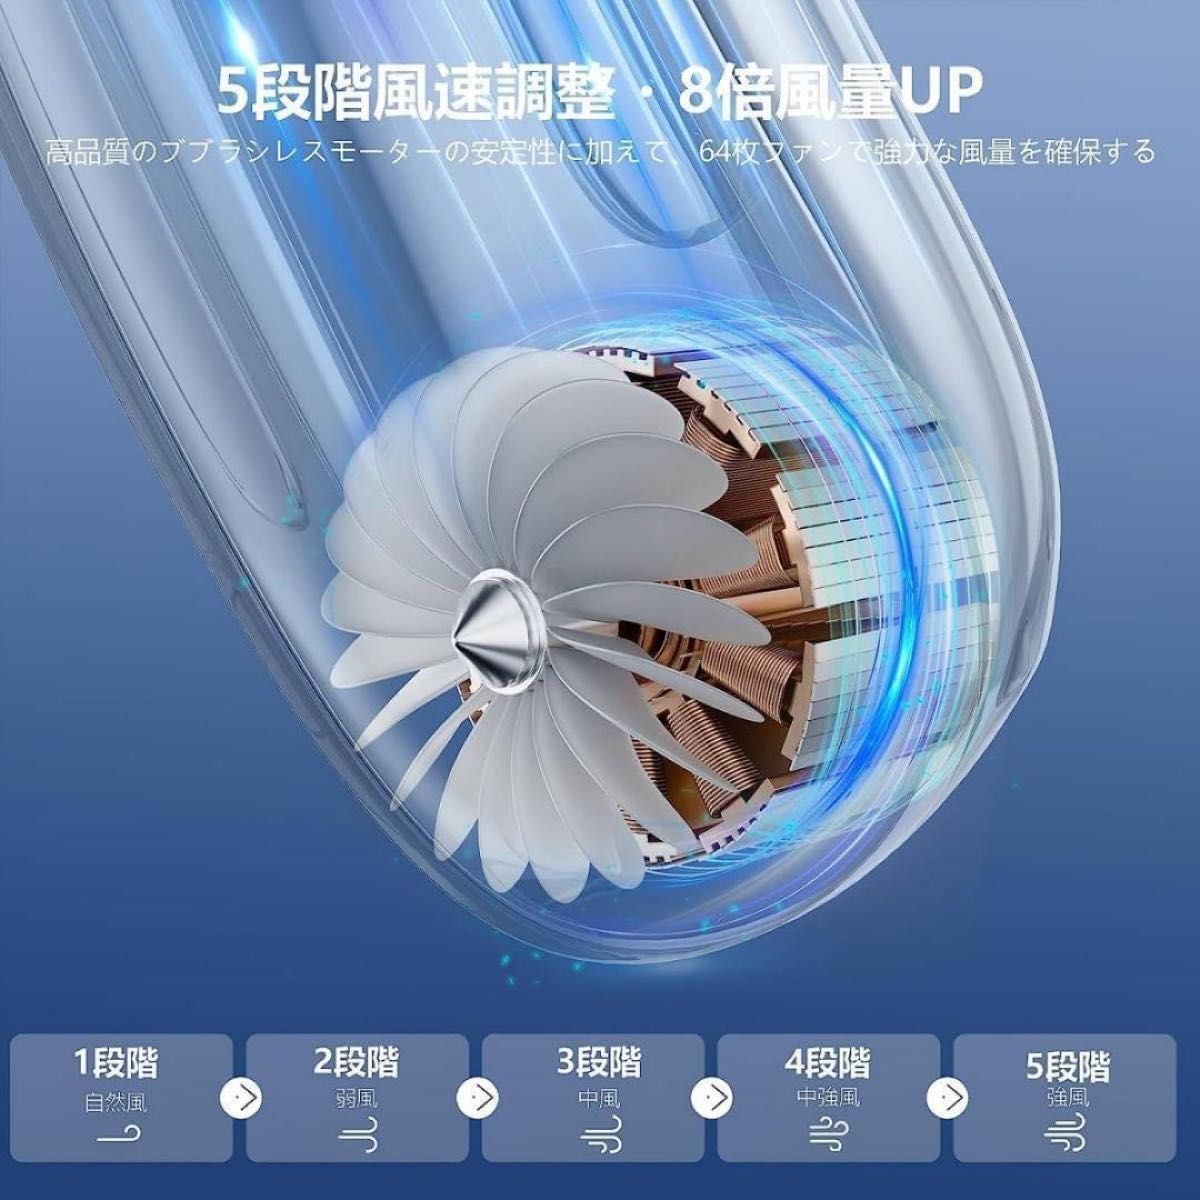 首掛け扇風機 ネッククーラー 羽根なし新型LEDディスプレイ搭載 ネックファン 首かけ 5段階風速調節 角度調整可能